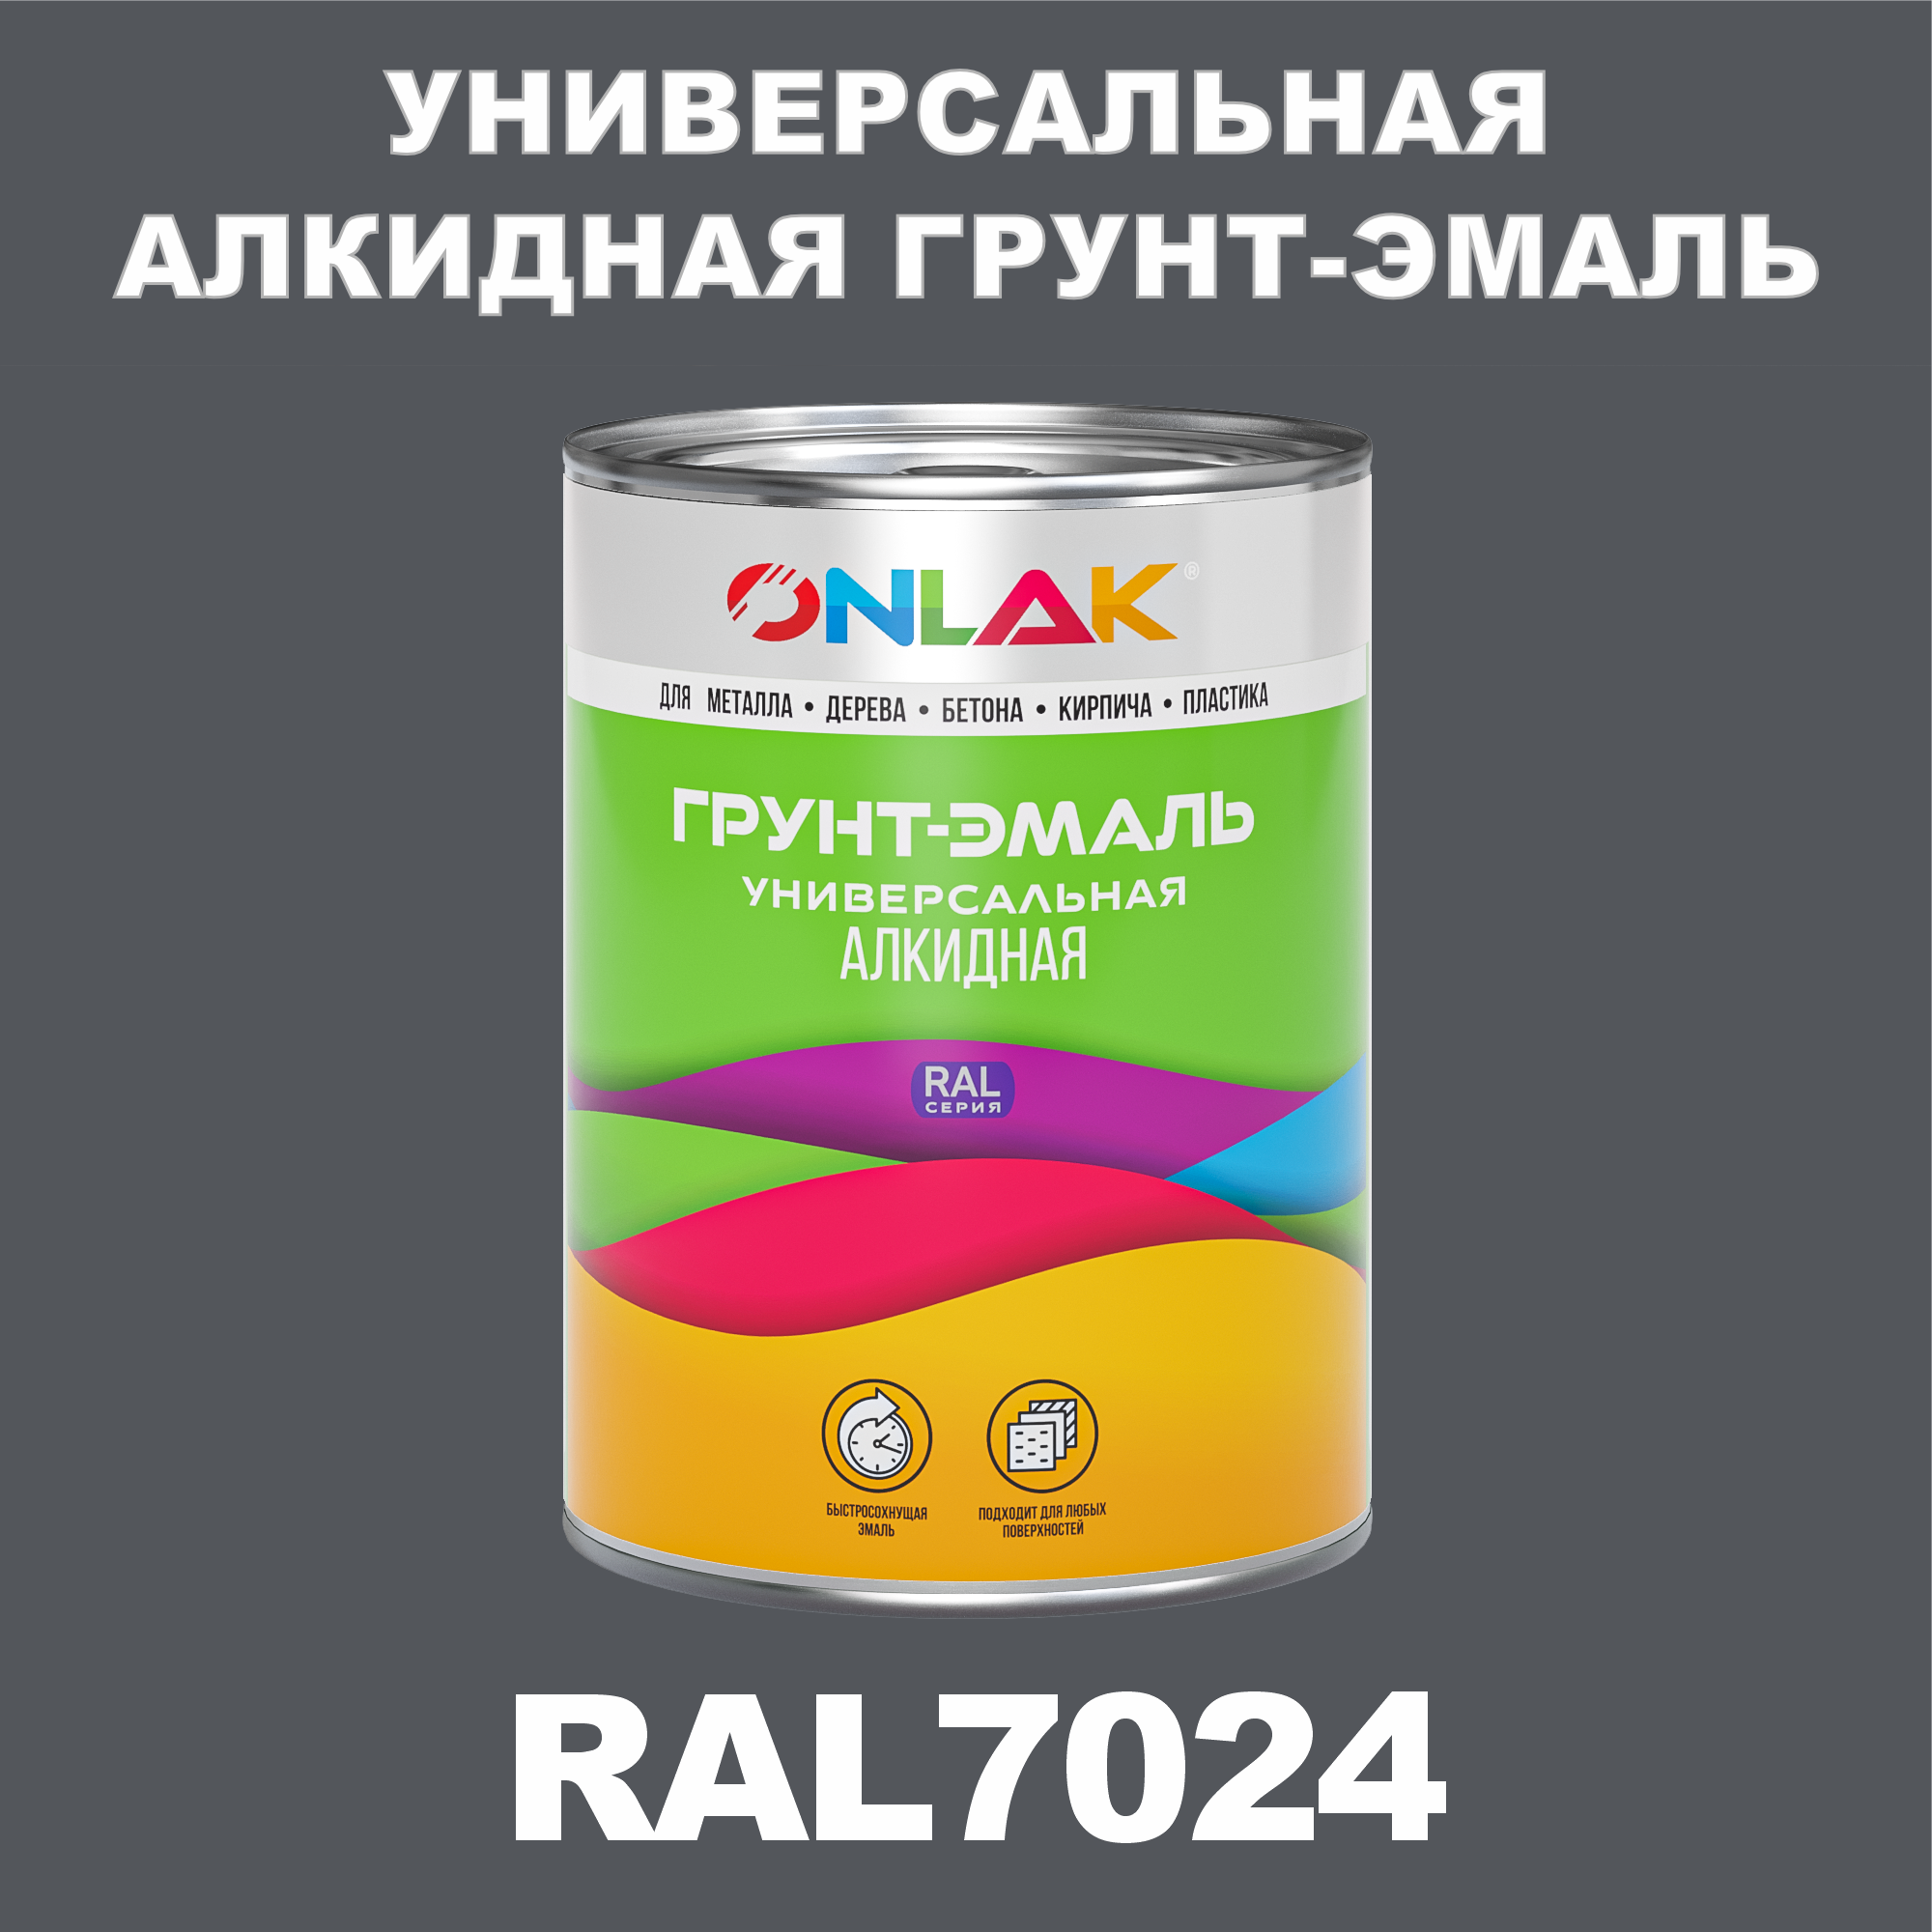 Грунт-эмаль ONLAK 1К RAL7024 антикоррозионная алкидная по металлу по ржавчине 1 кг грунт эмаль престиж по ржавчине алкидная зеленая 1 9 кг